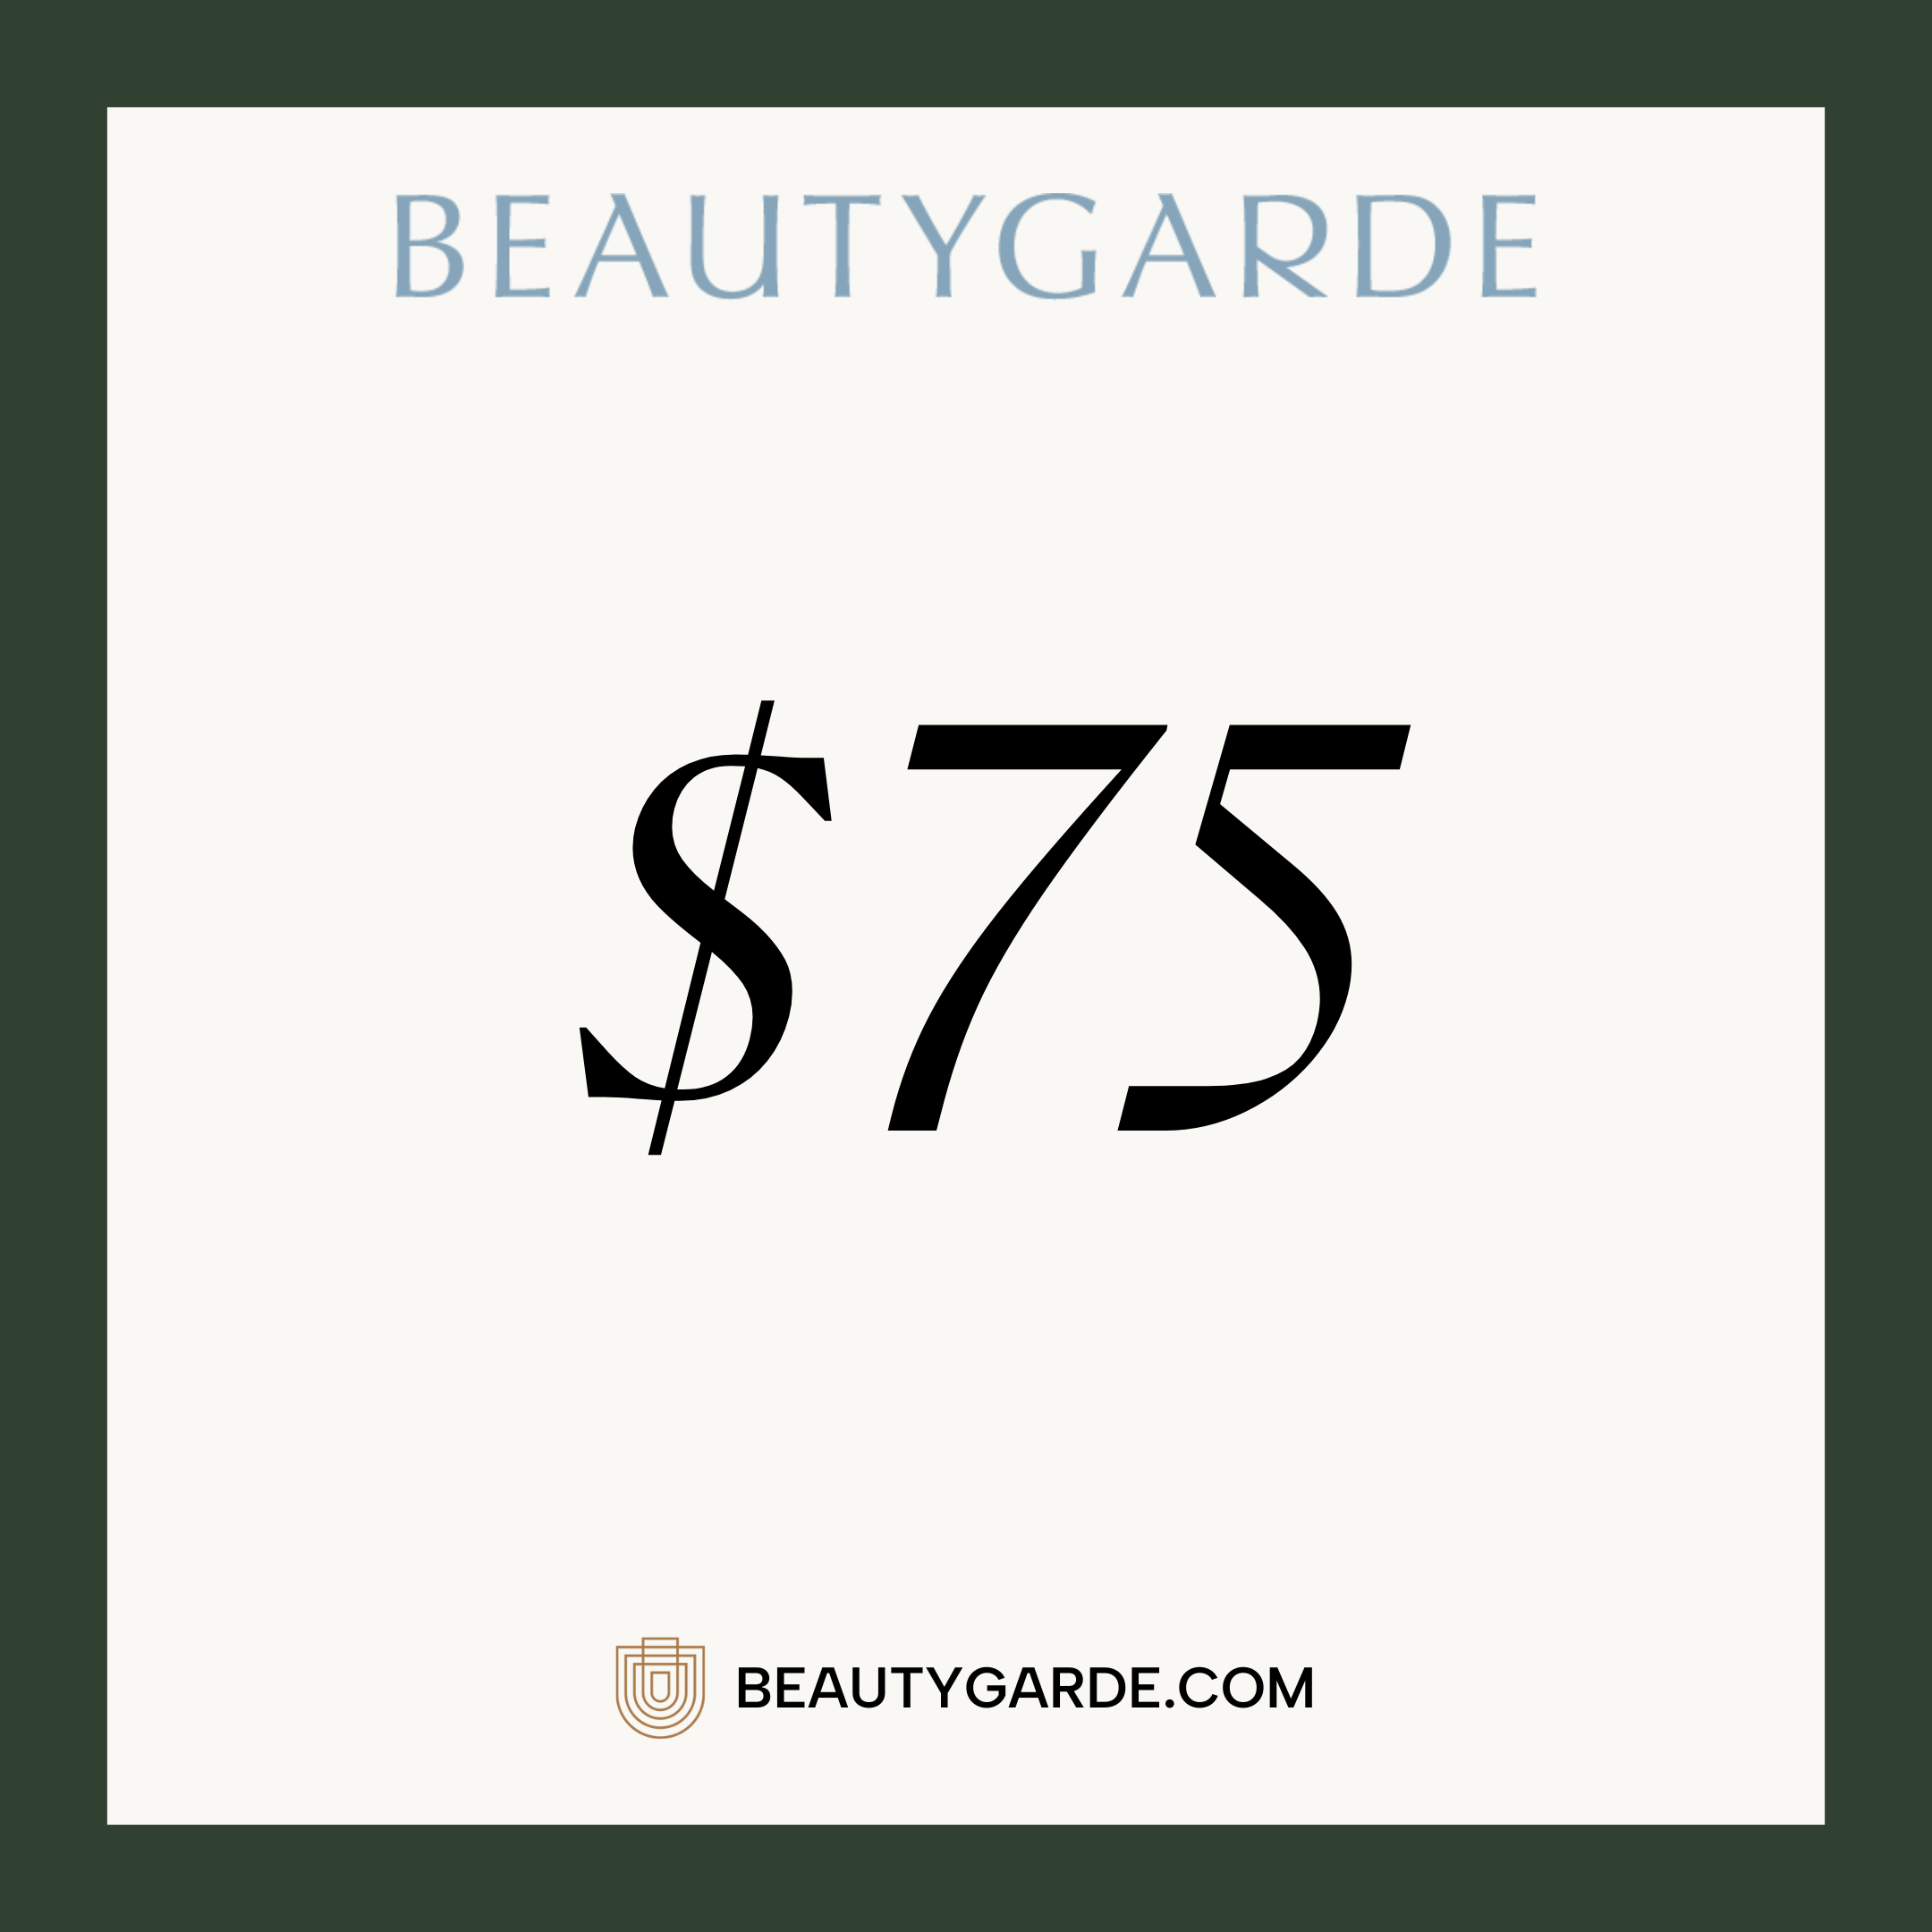 BeautyGARDE Digital Giftcard